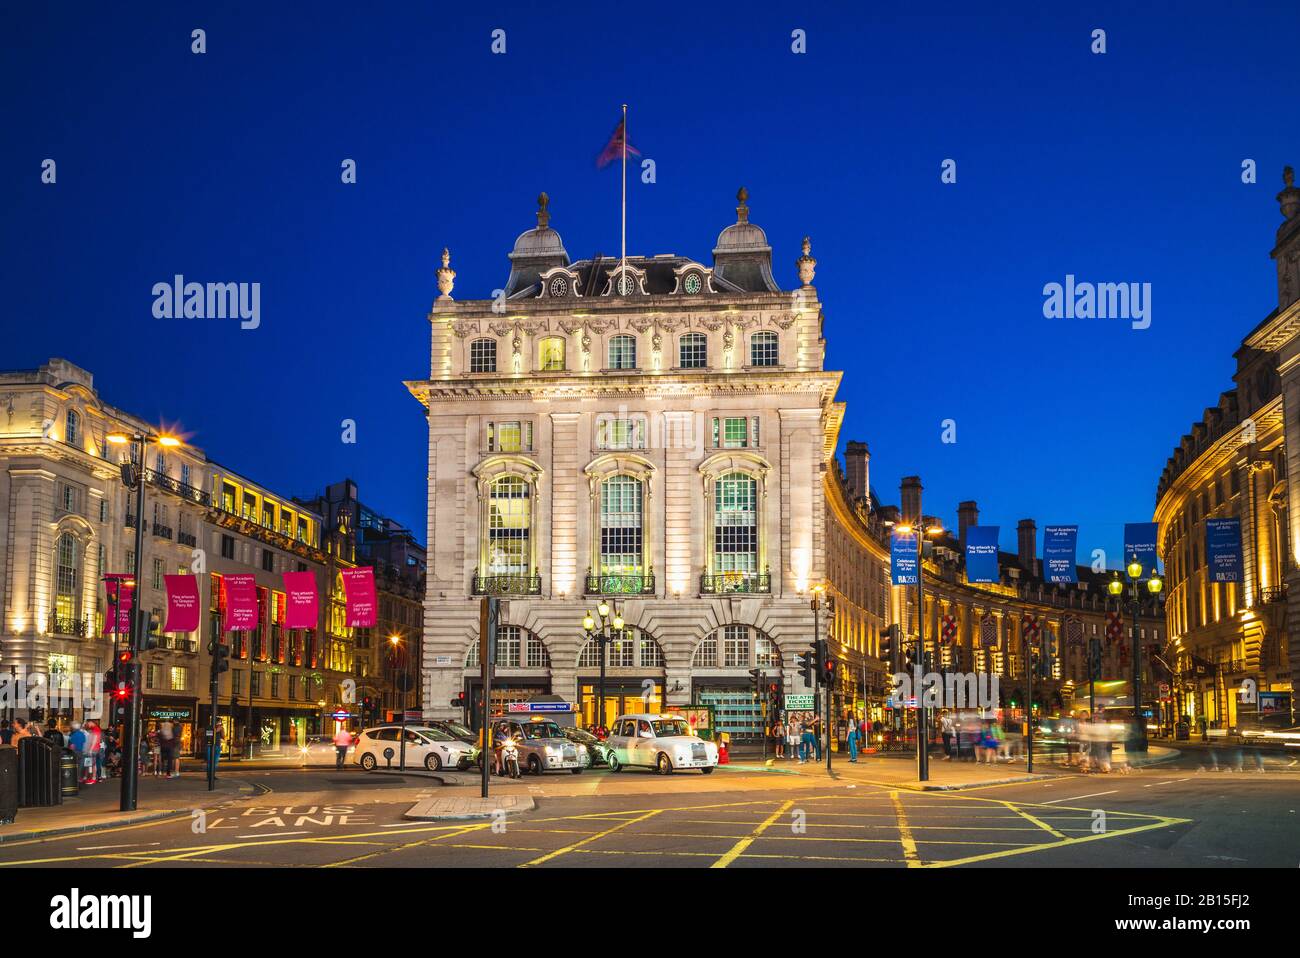 Londra, Regno Unito - 3 luglio 2018: Vista notturna del circo di piccadilly, incrocio stradale e spazio pubblico del West End di Londra nella City of Westminster. Foto Stock